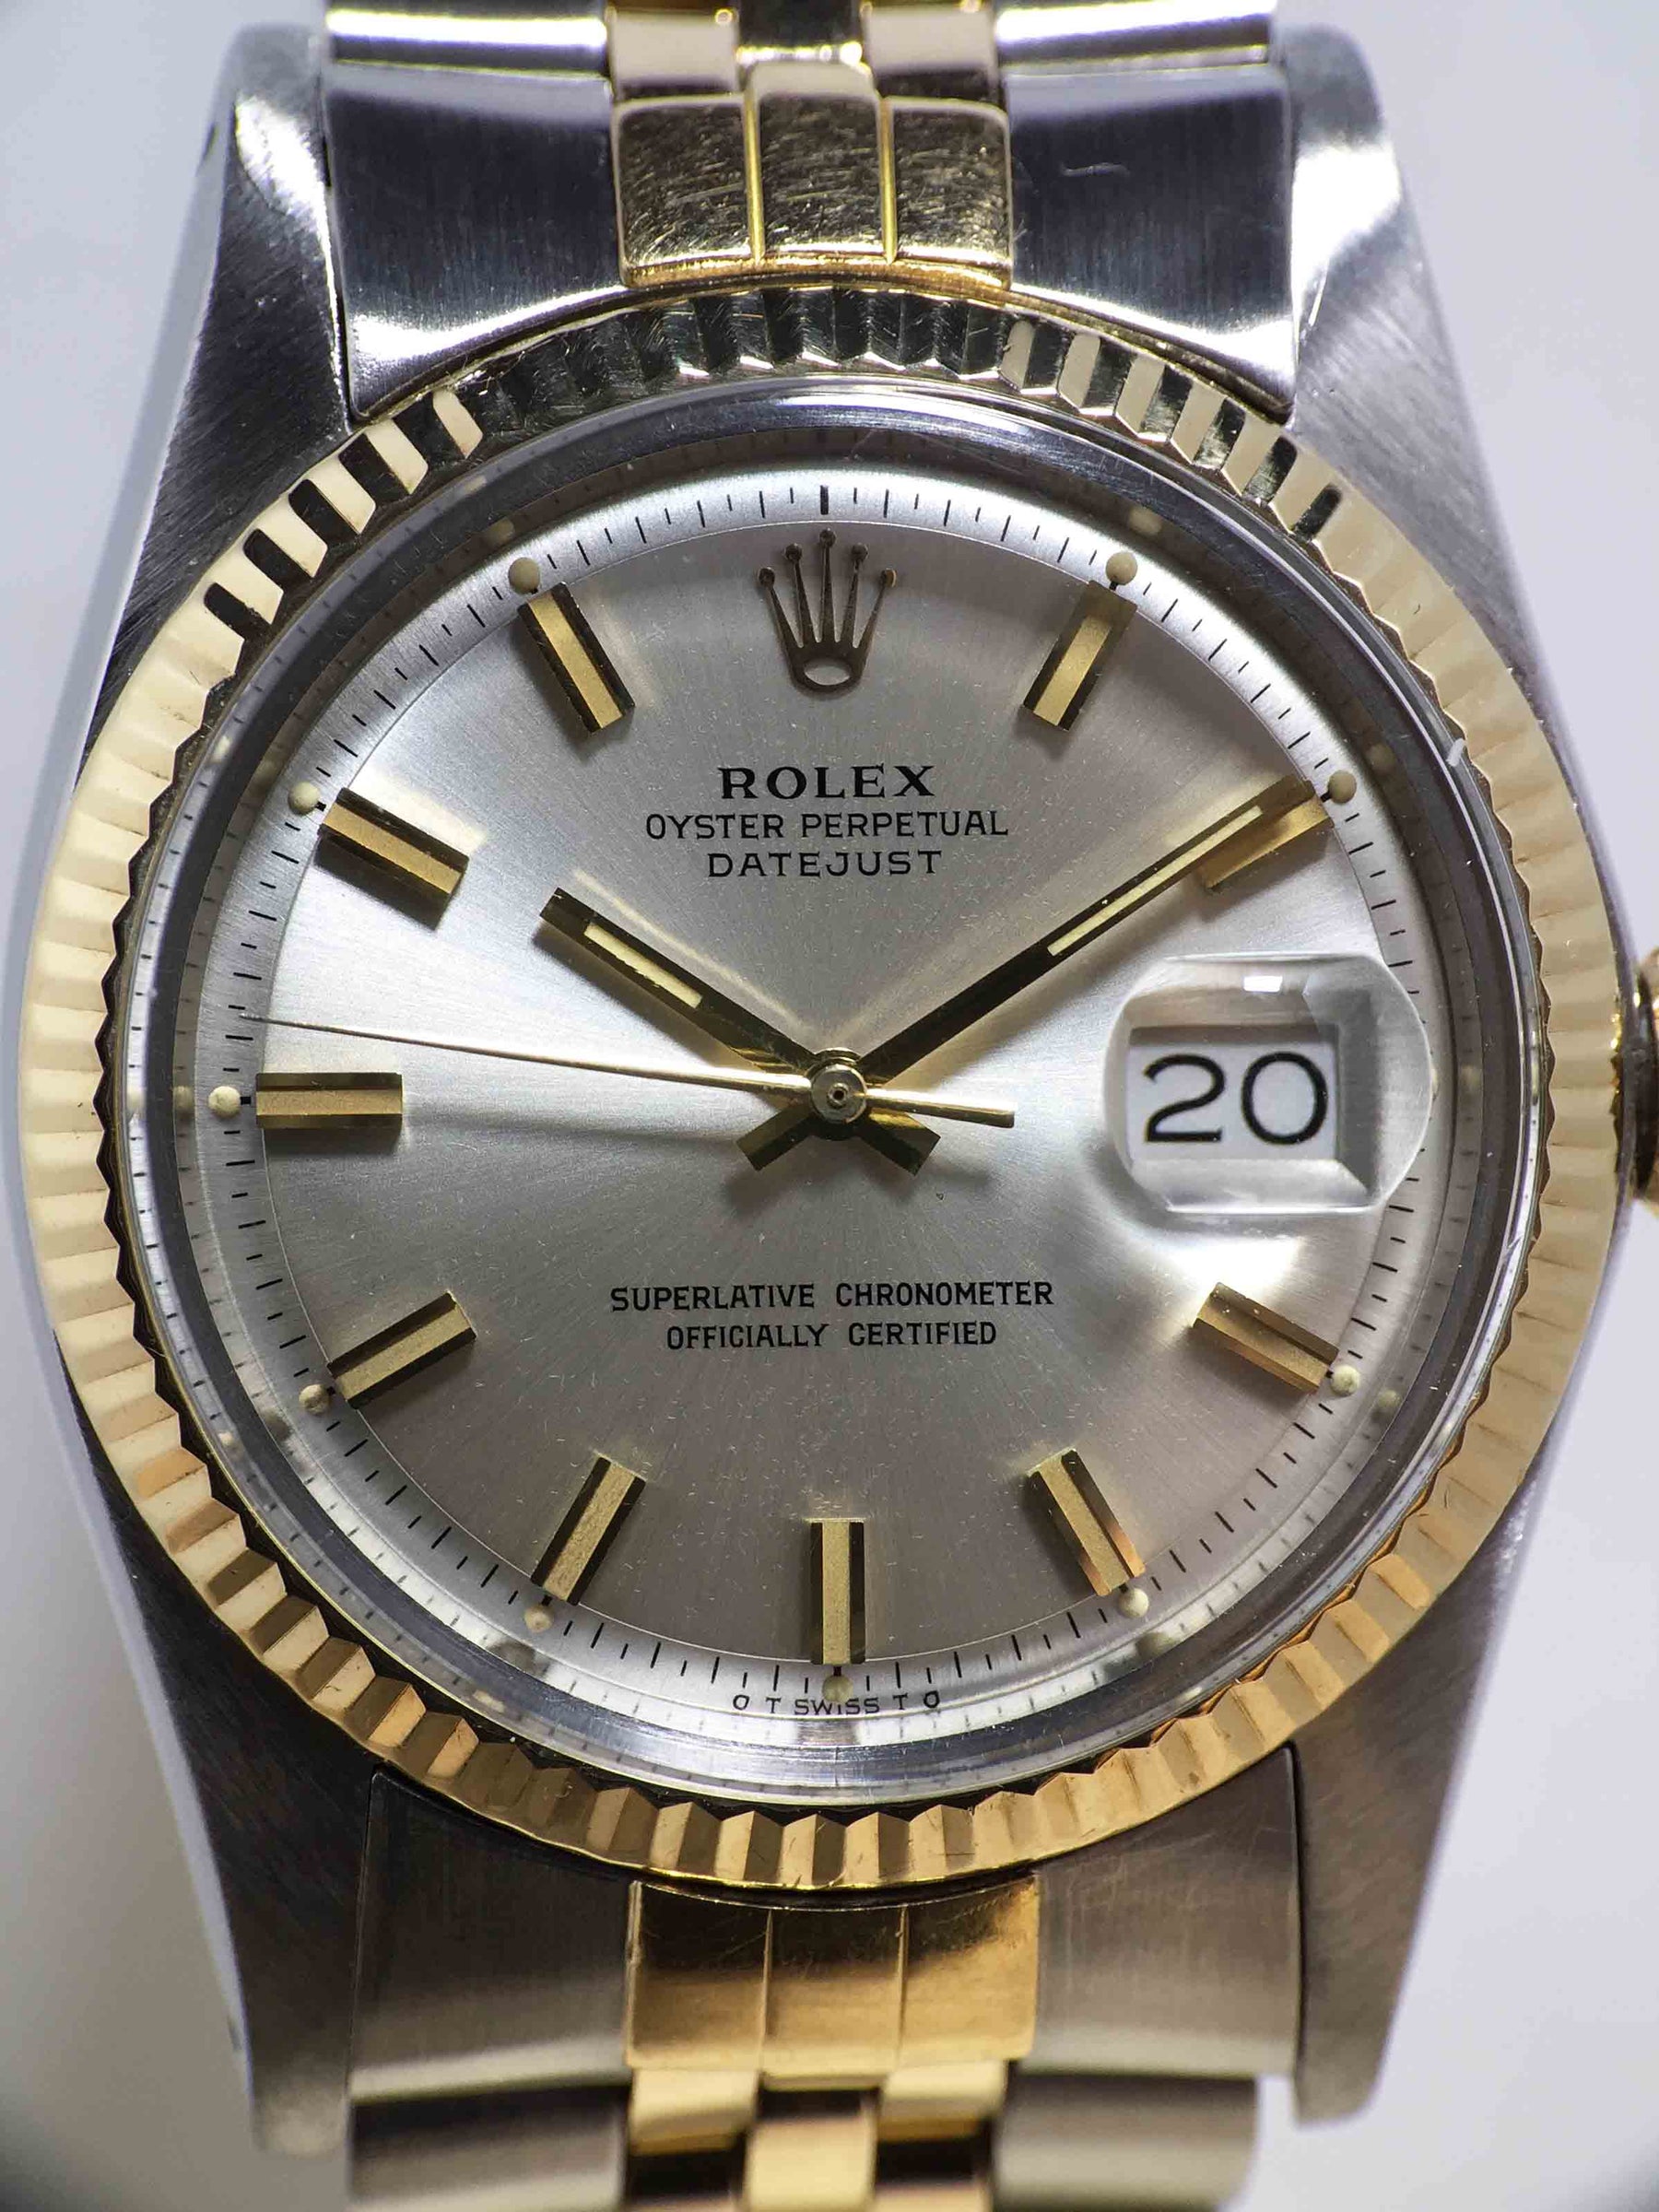 1973 Rolex Datejust Sigma Dial St/G Ref. 1601